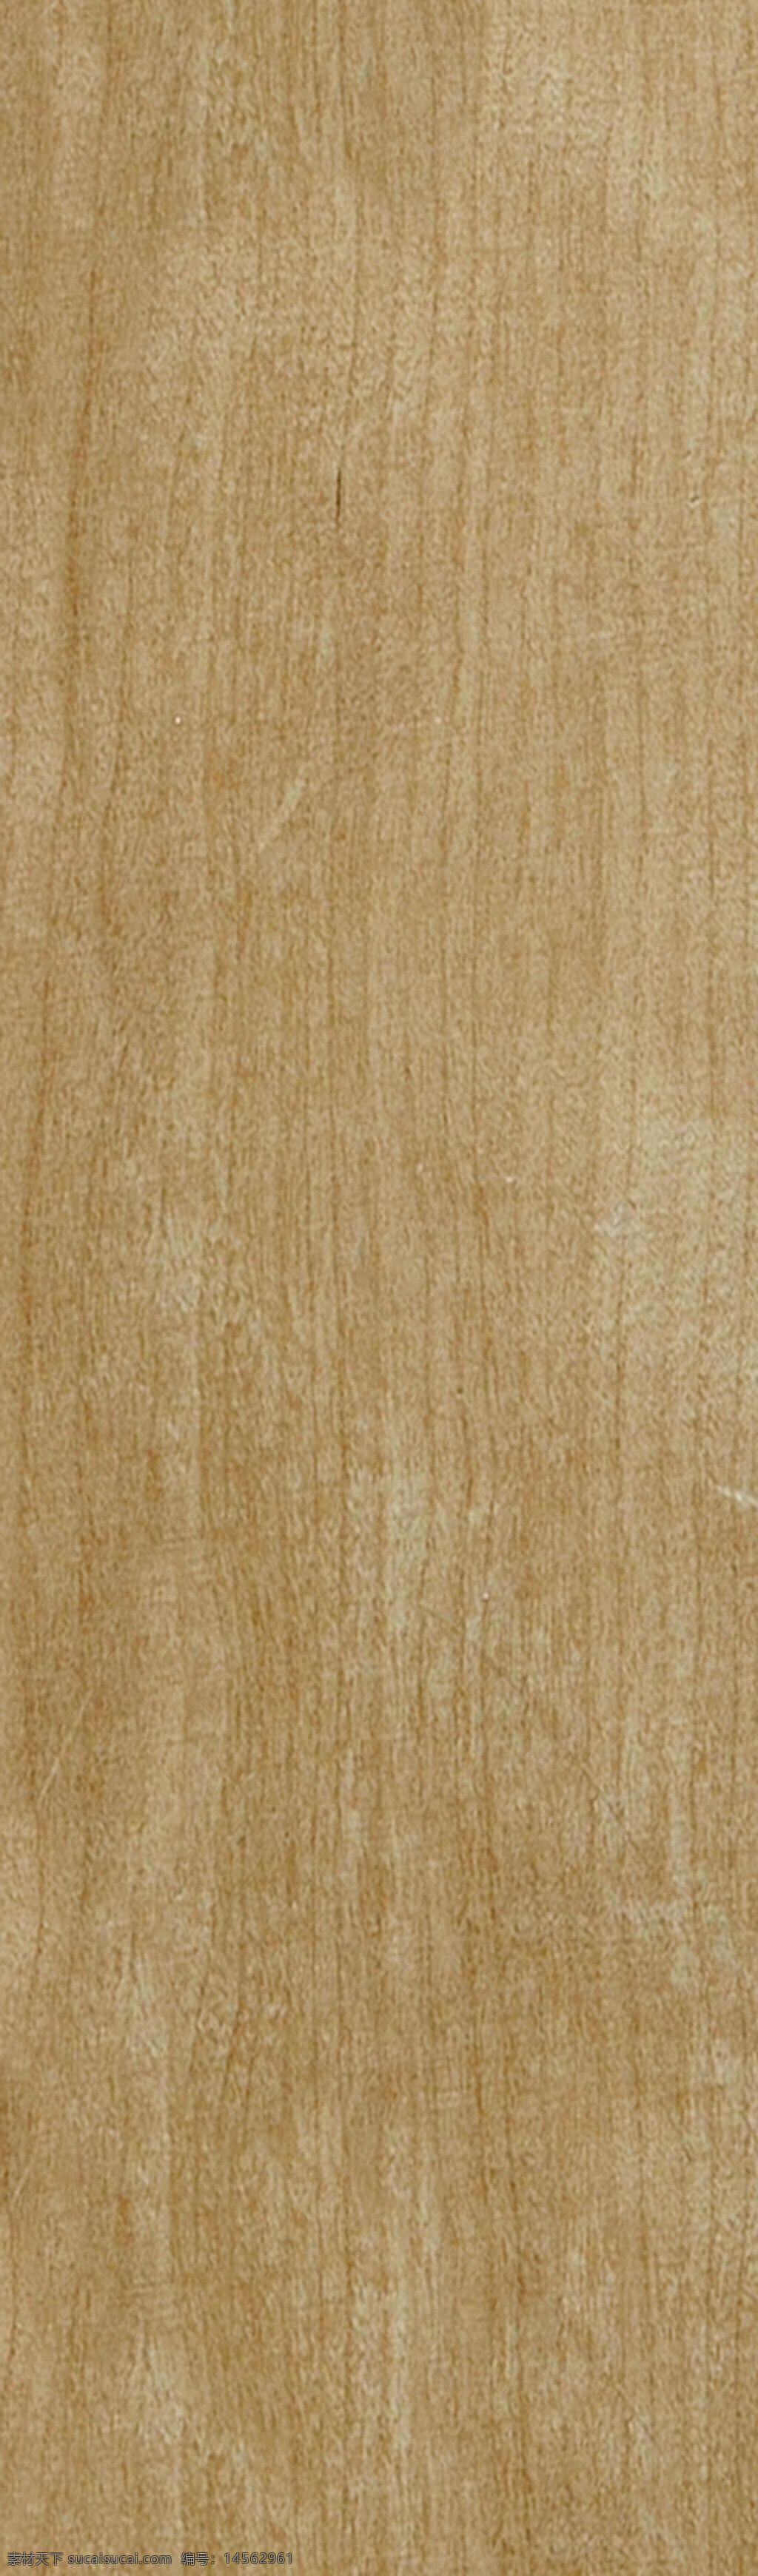 实木纹 树纹 高档 材质 实木 纹理 木地板 底纹 花纹 木 木板纹理 木纹板材 木板花纹 木皮 木门板 旧木板 木头 背景墙 木板材质